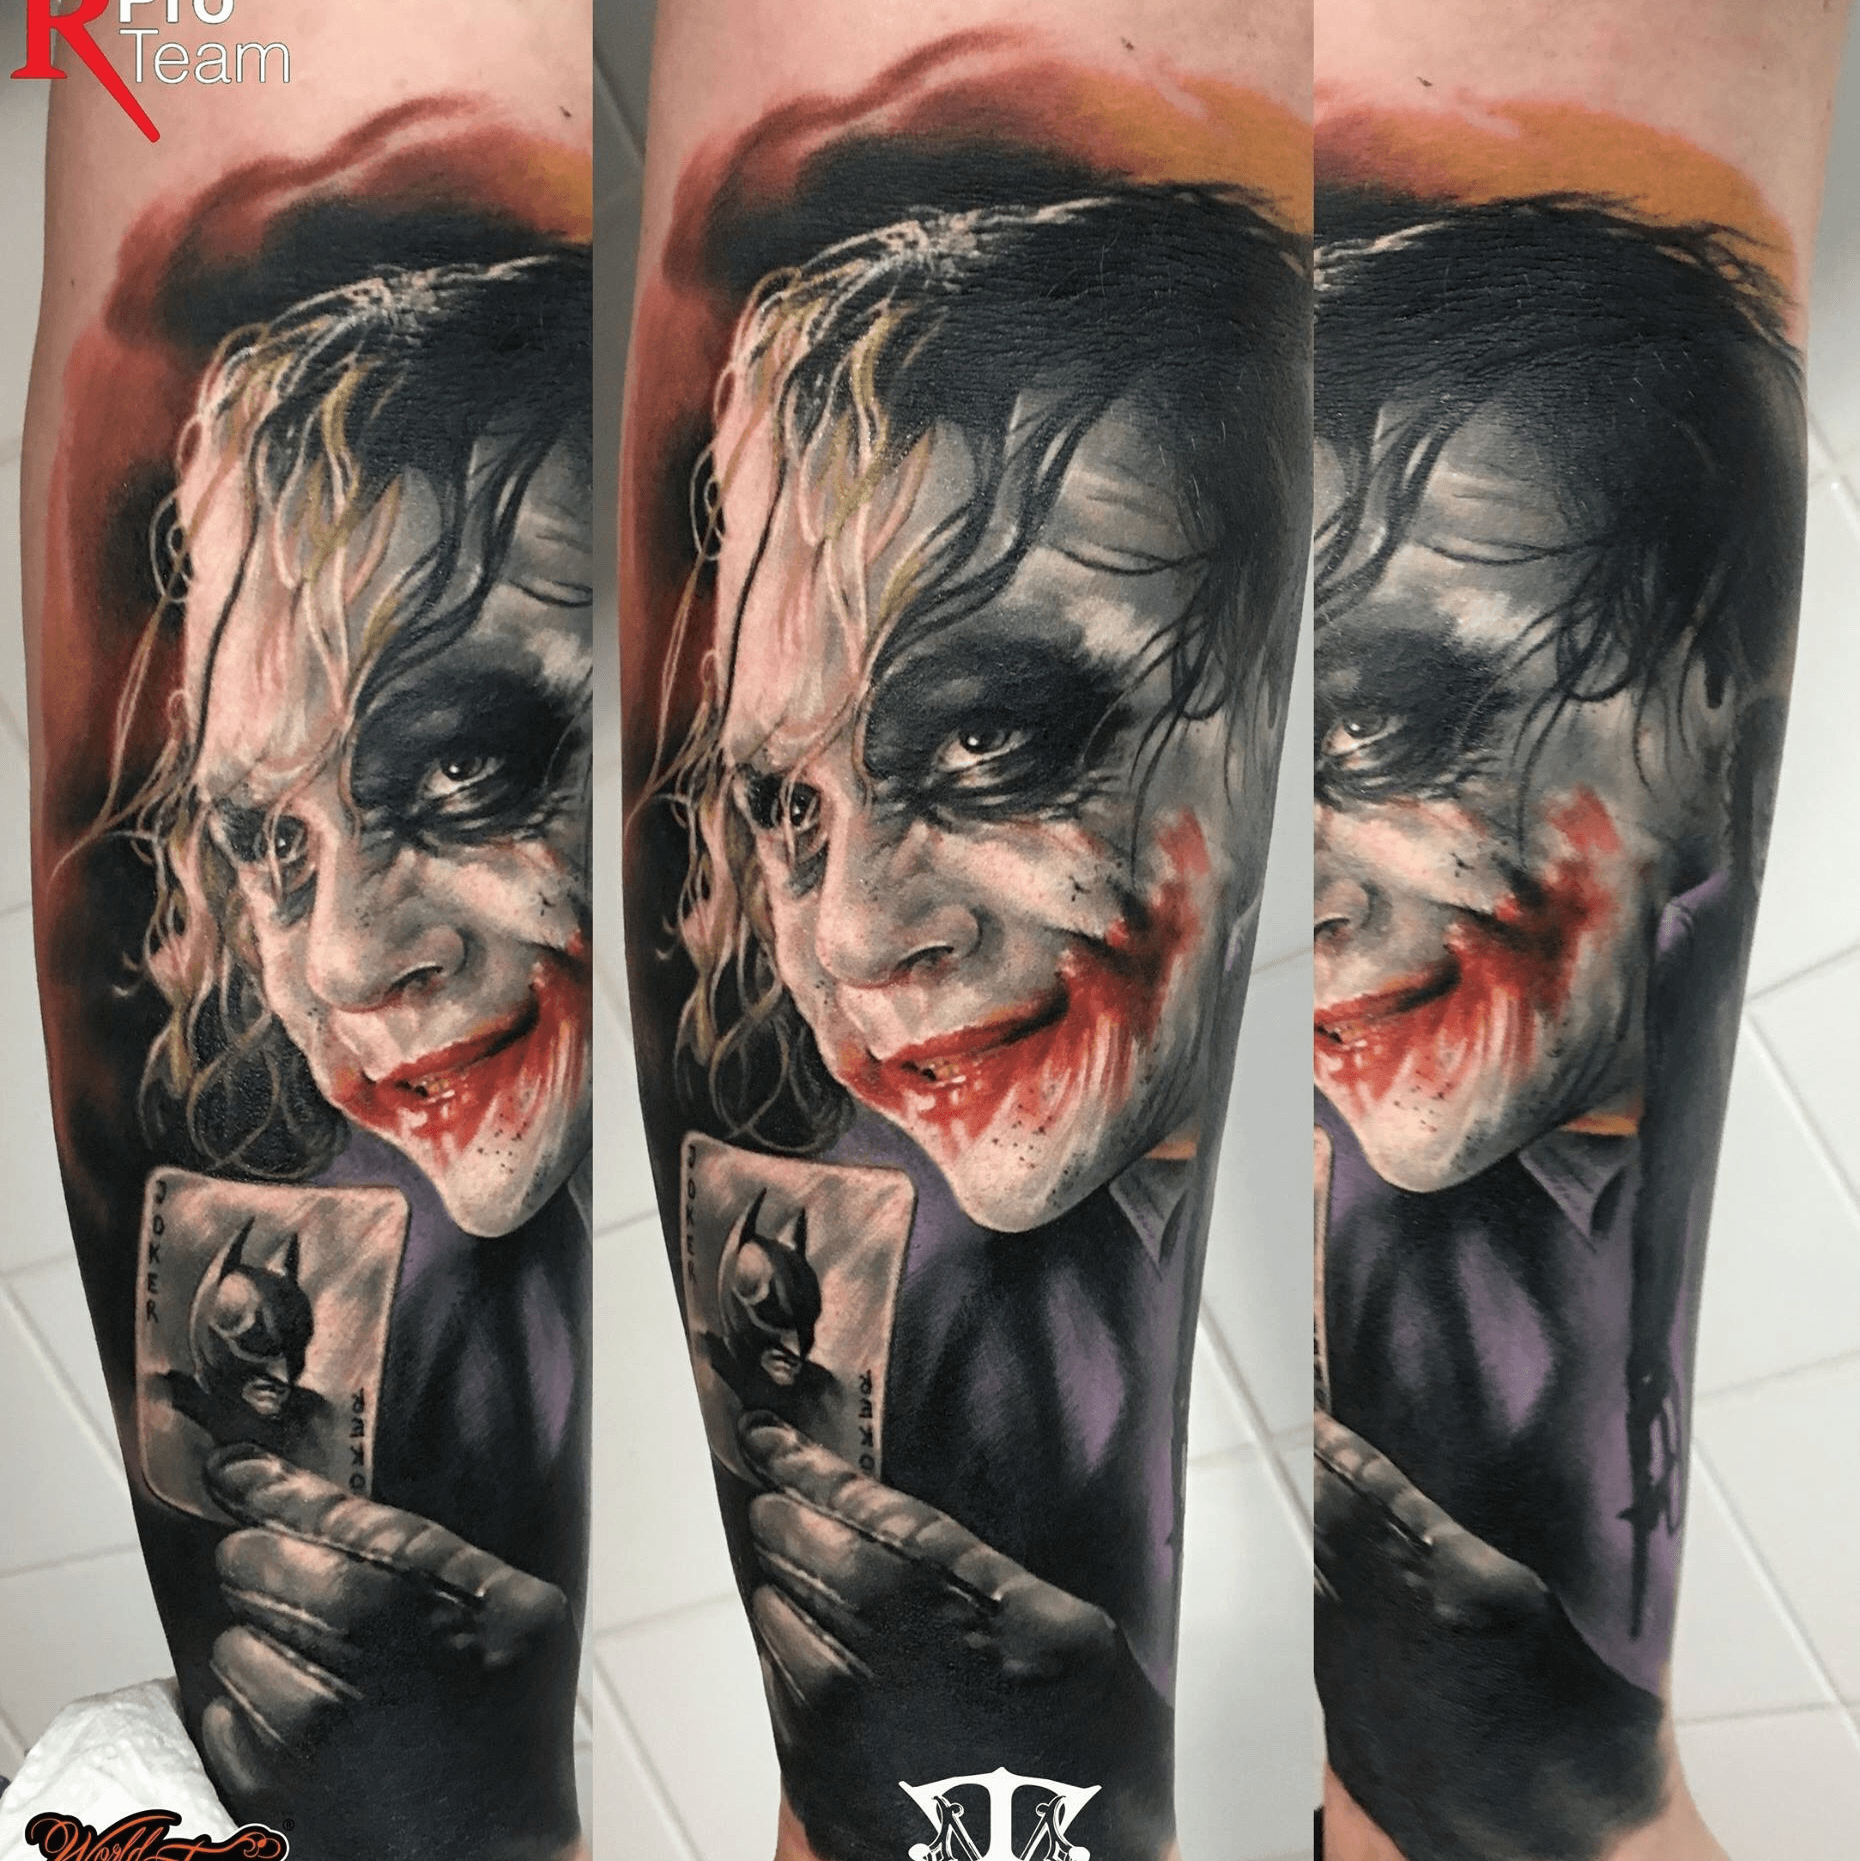 Javier Antunez on Instagram BatmanJoker tattoo or is it JokerBatman  Lol i had so much fun tattoo thi  Batman joker tattoo Comic tattoo Joker  face tattoo